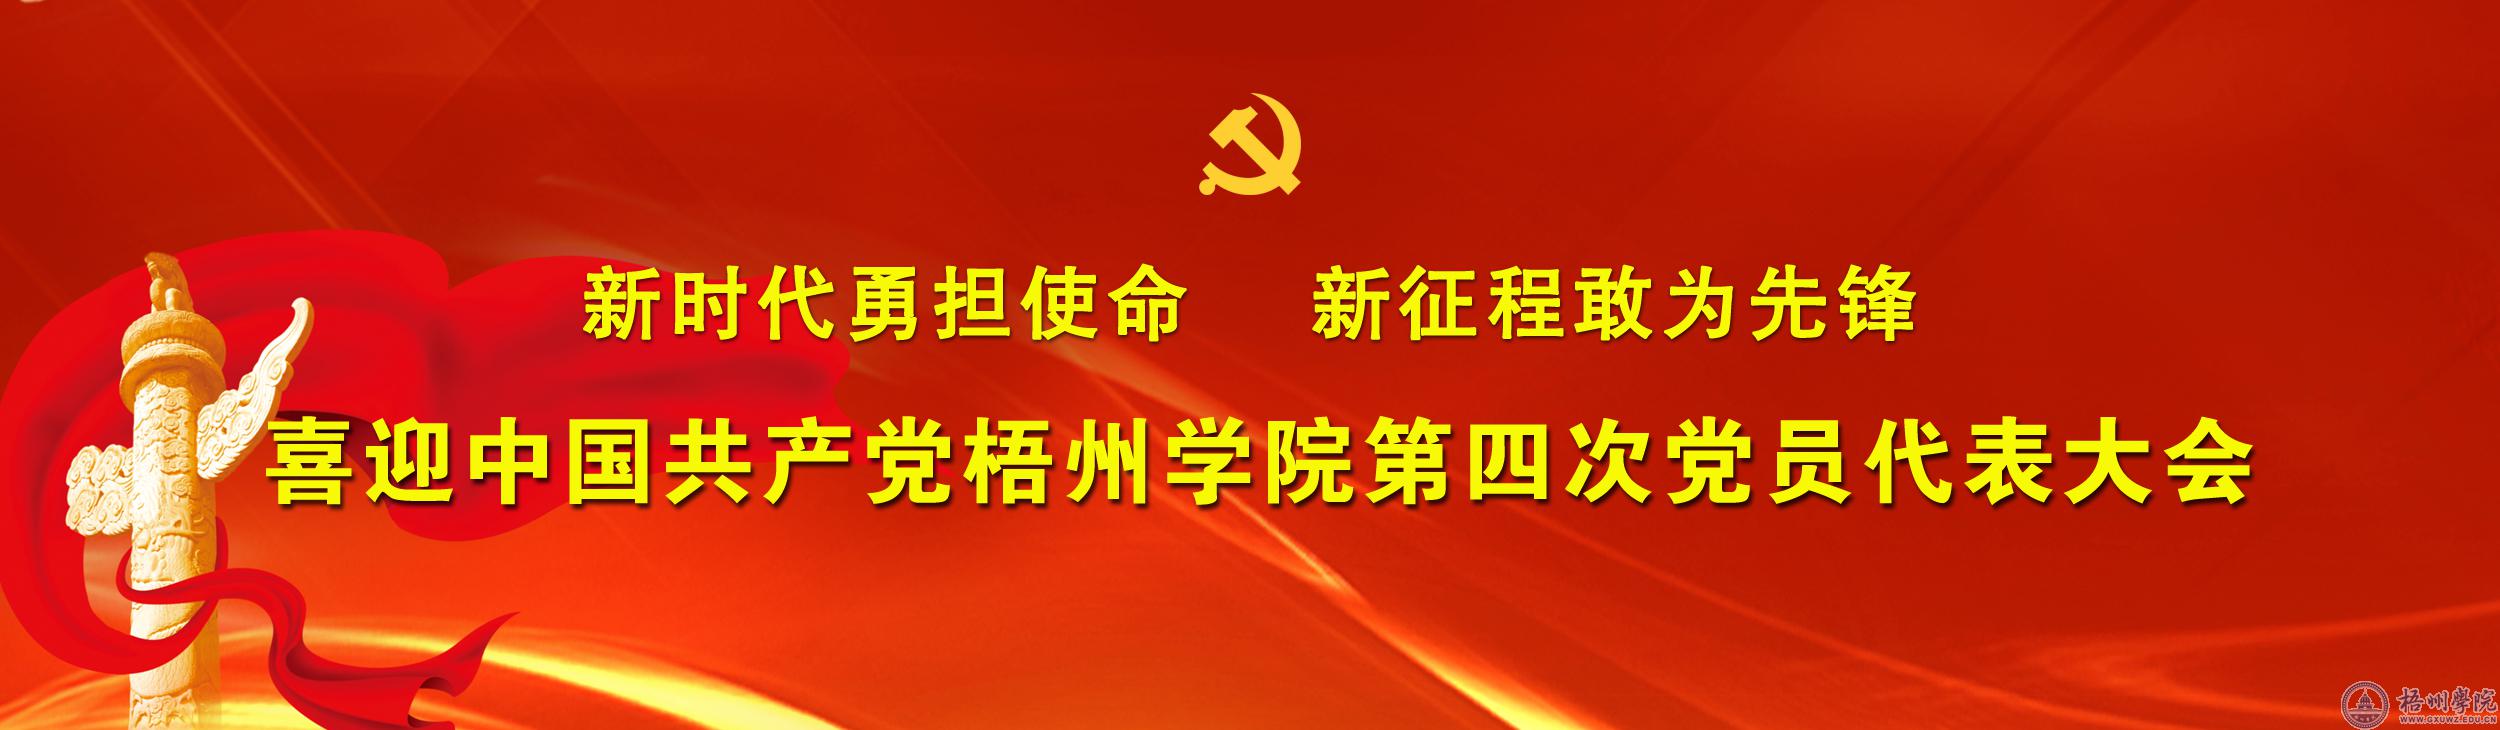 喜迎中国共产党爱游戏ayx官网(中国)有限公司第四次党员代表大会